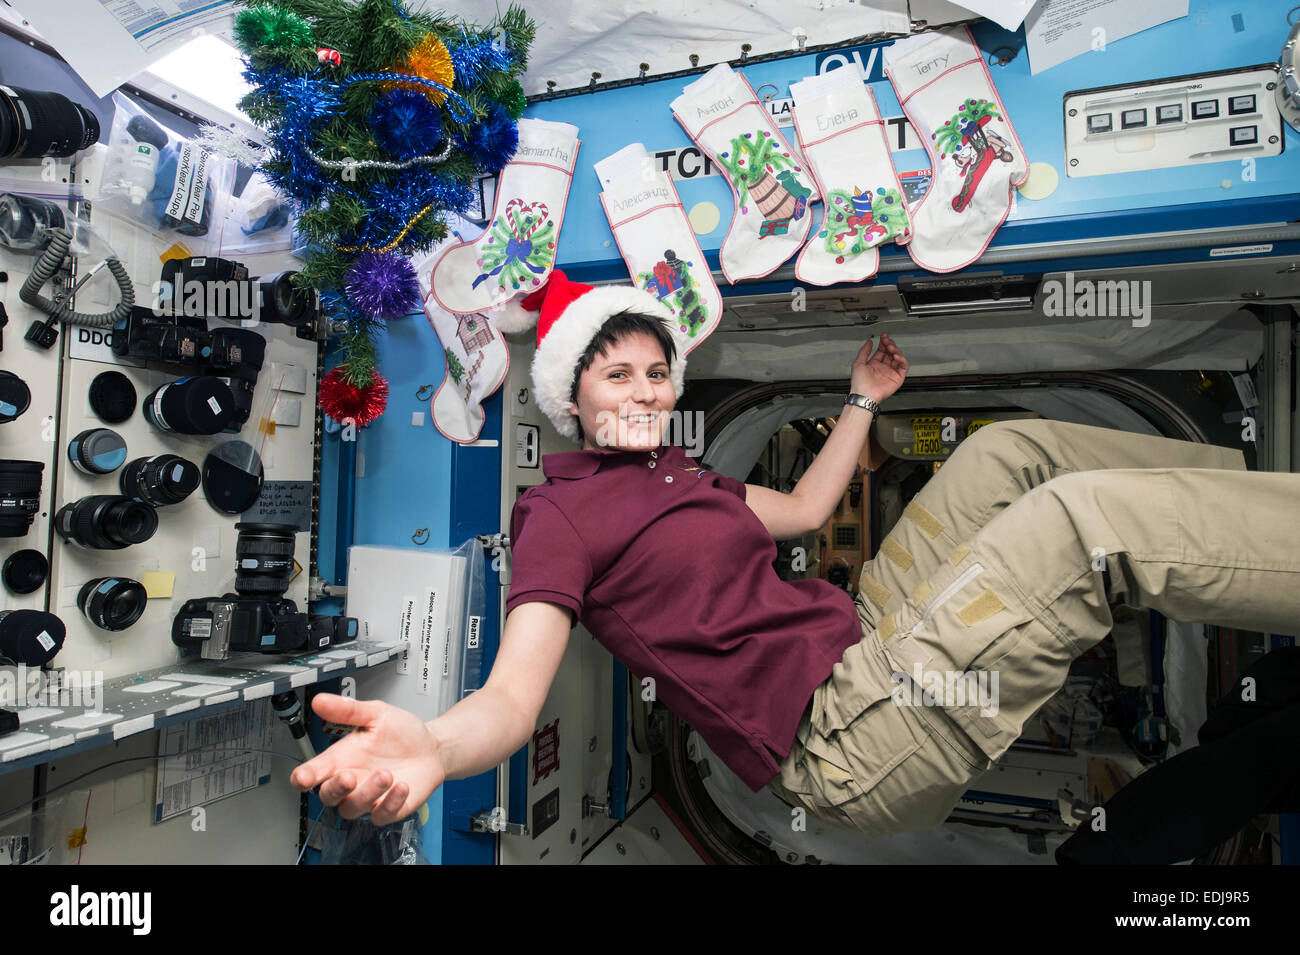 Stazione Spaziale Internazionale Expedition 42 Tecnico di volo Samantha Cristoforetti dell'Agenzia spaziale europea celebra il Natale mentre la vela intorno alla Terra ad oltre 17.000 miglia all'ora Dicembre 20, 2014 in orbita intorno alla terra. Foto Stock